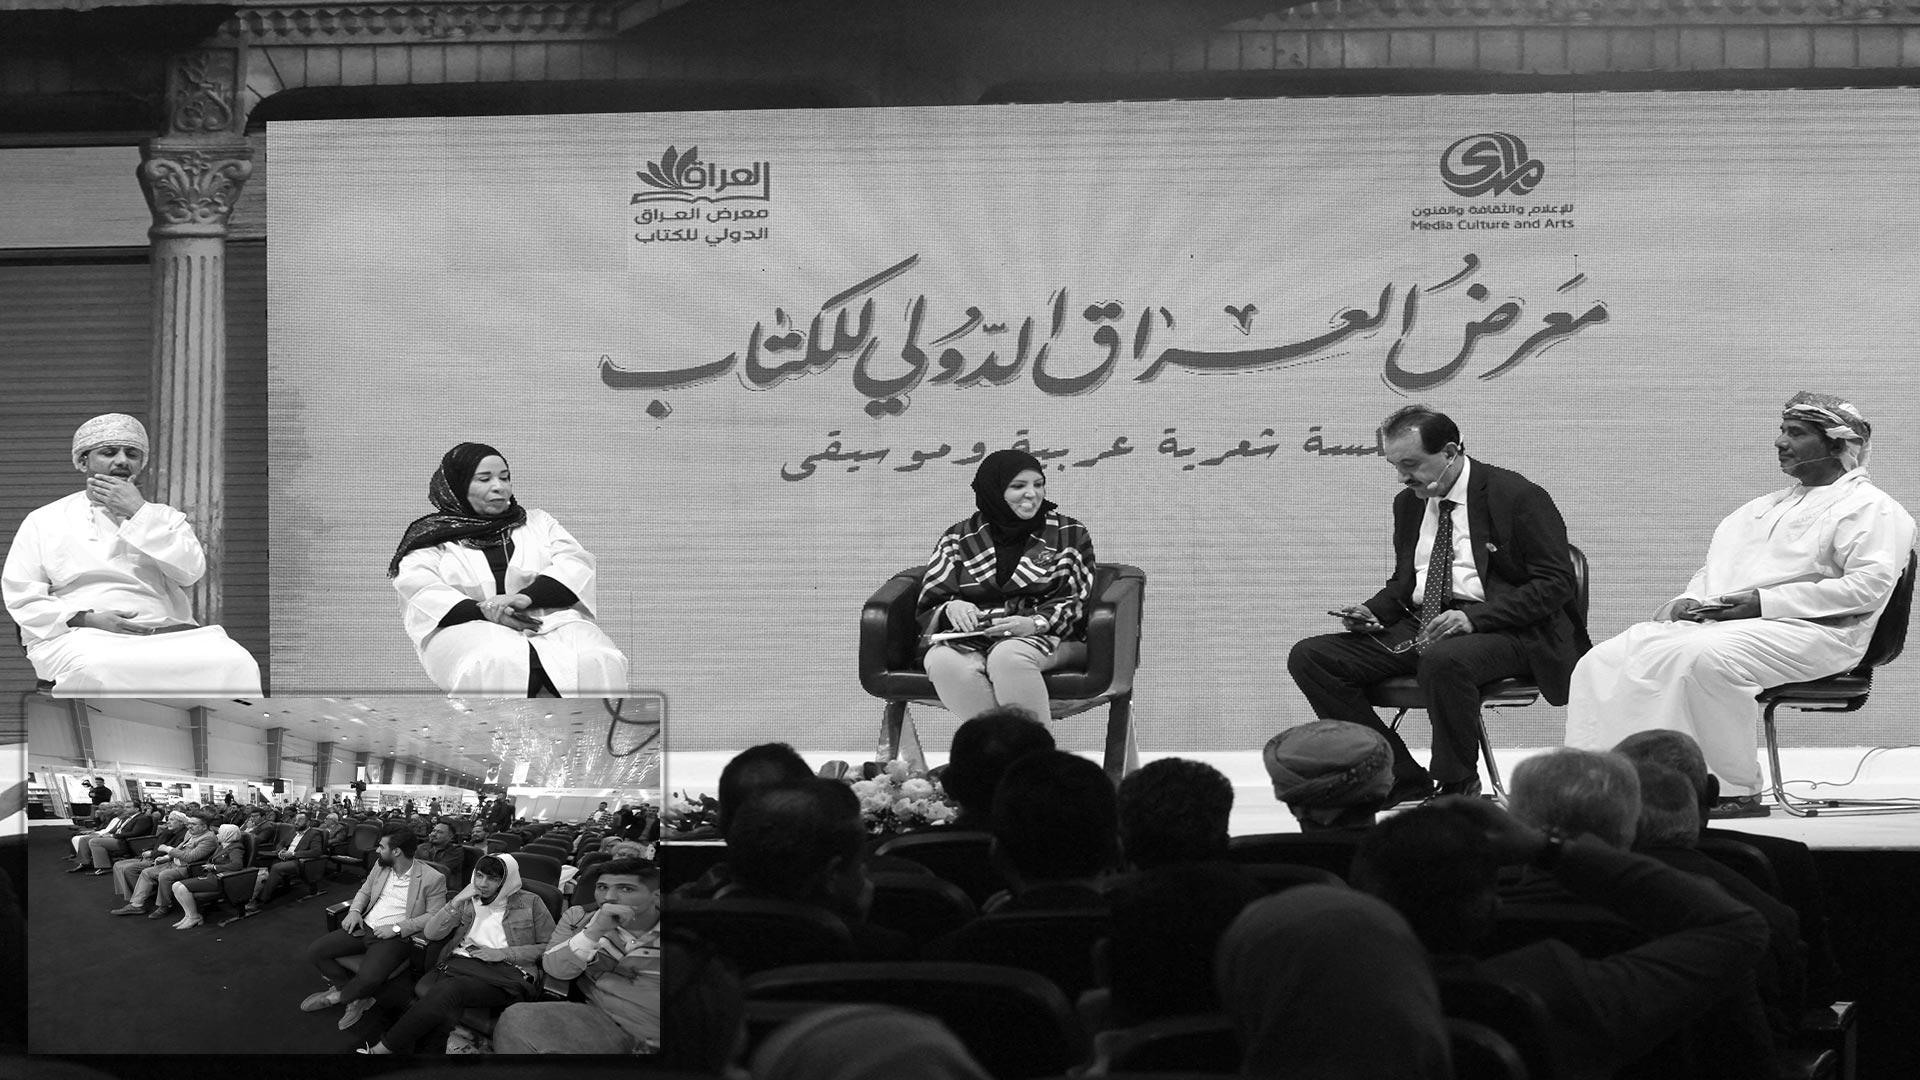 جلسة شعر وموسيقى عمانية في معرض العراق الدولي للكتاب